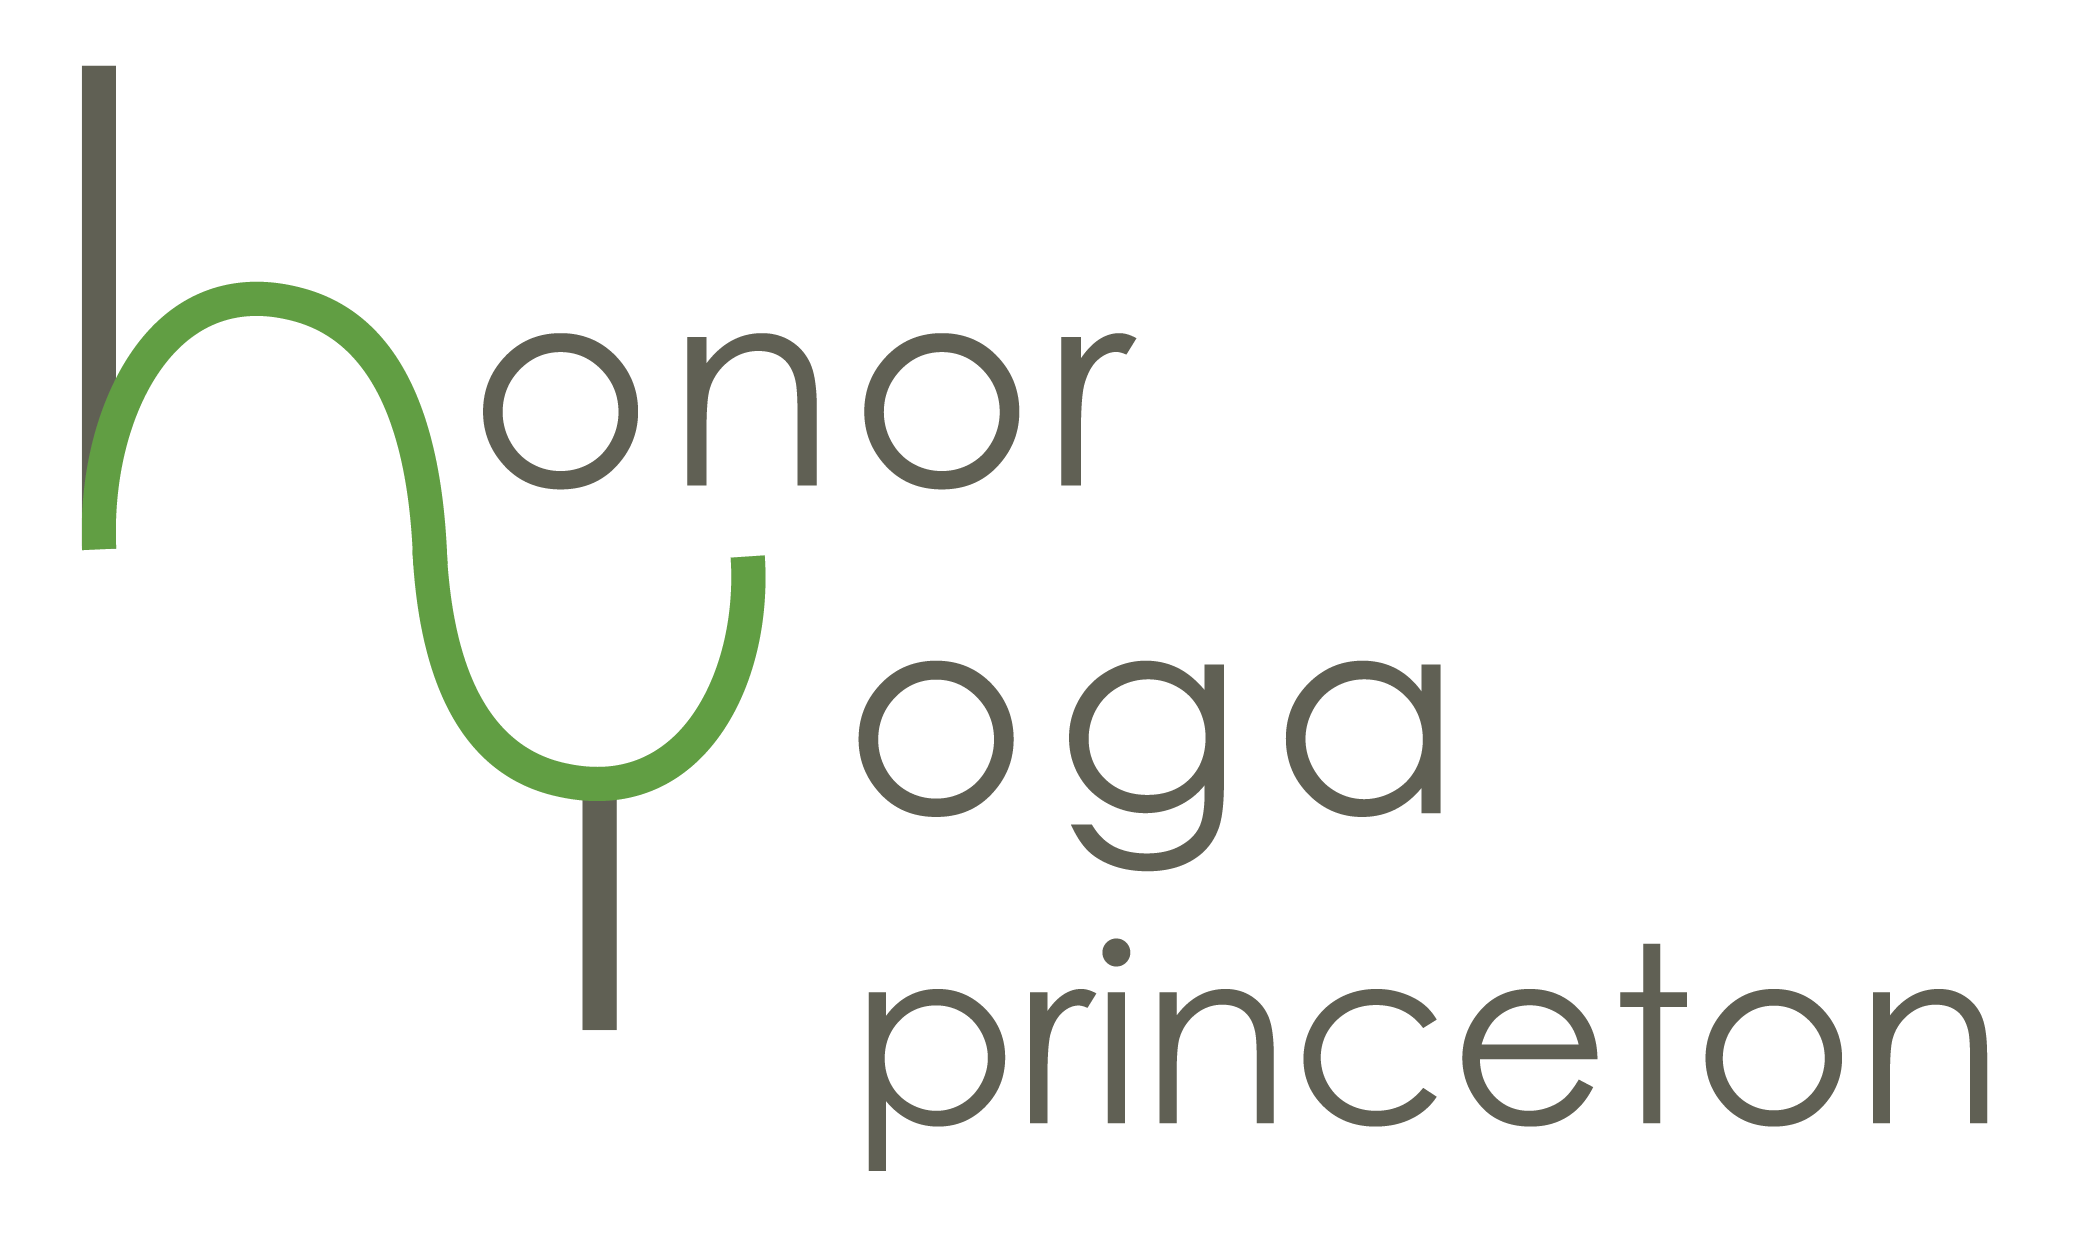 Honor Yoga Princeton